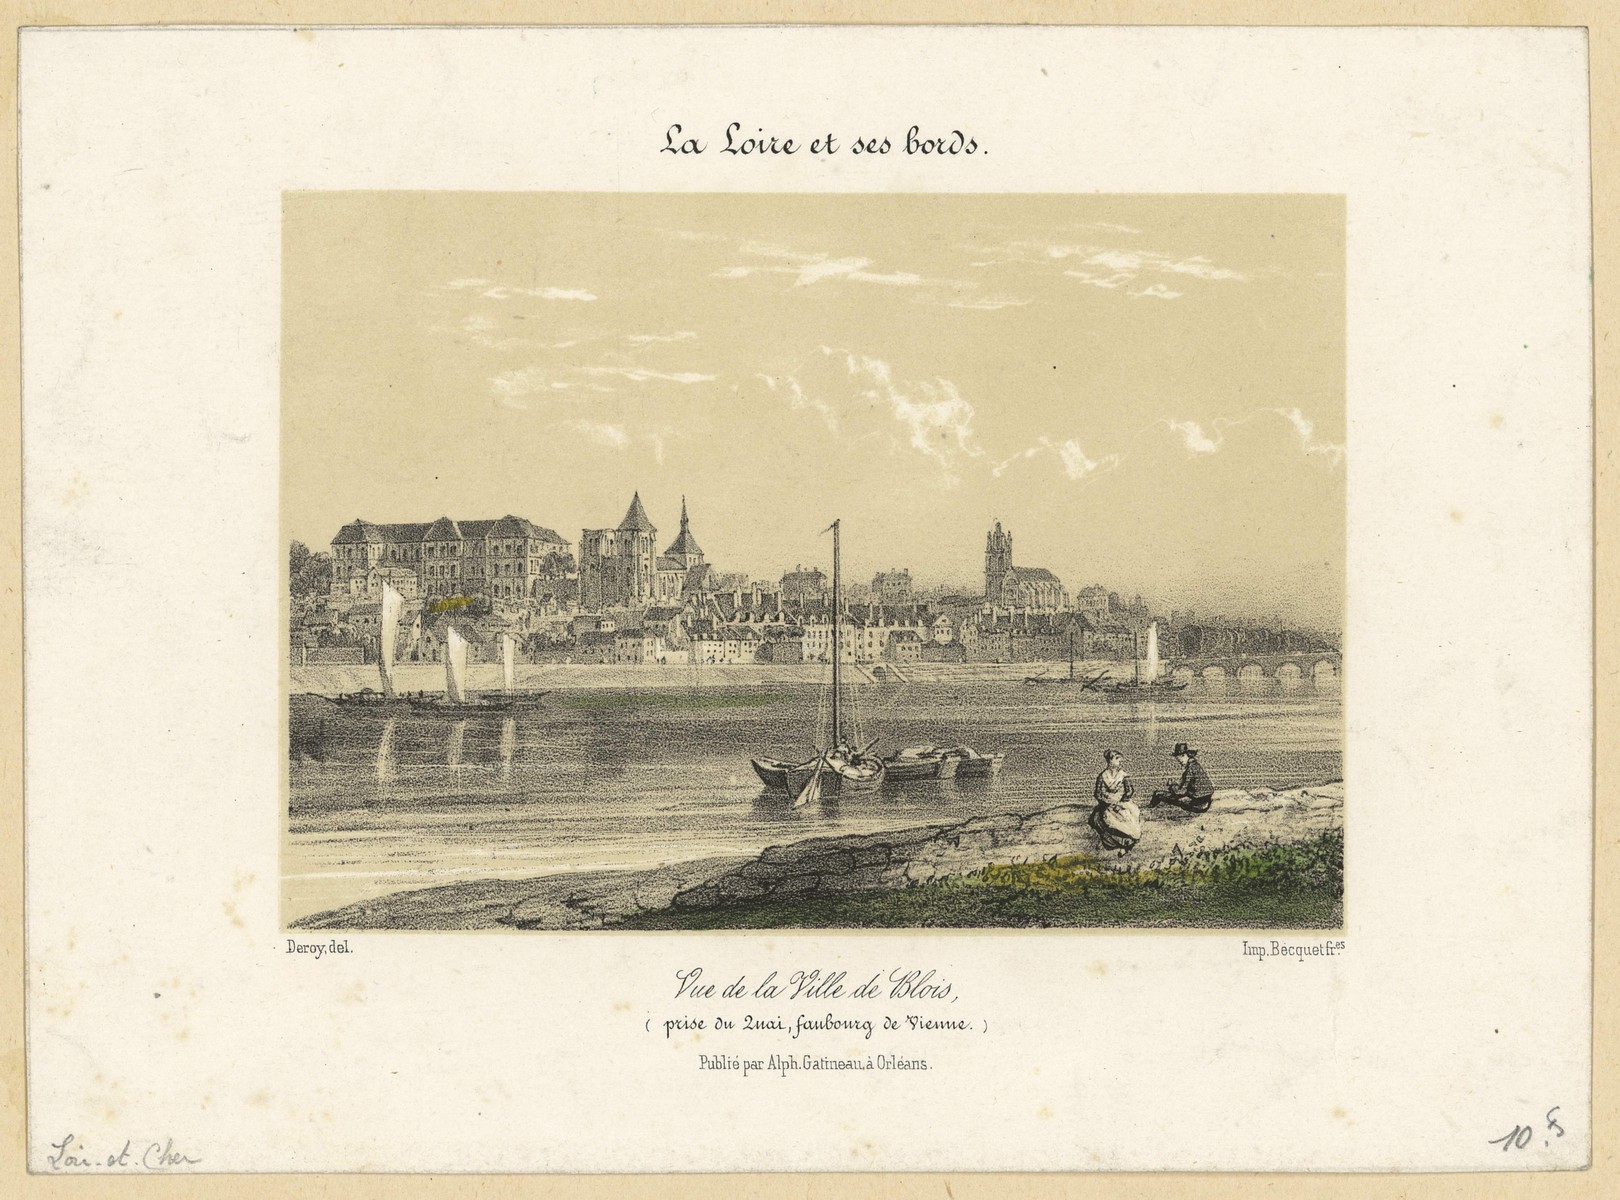 Deroy, Vue de la ville de Blois, lithographie, vers 1845